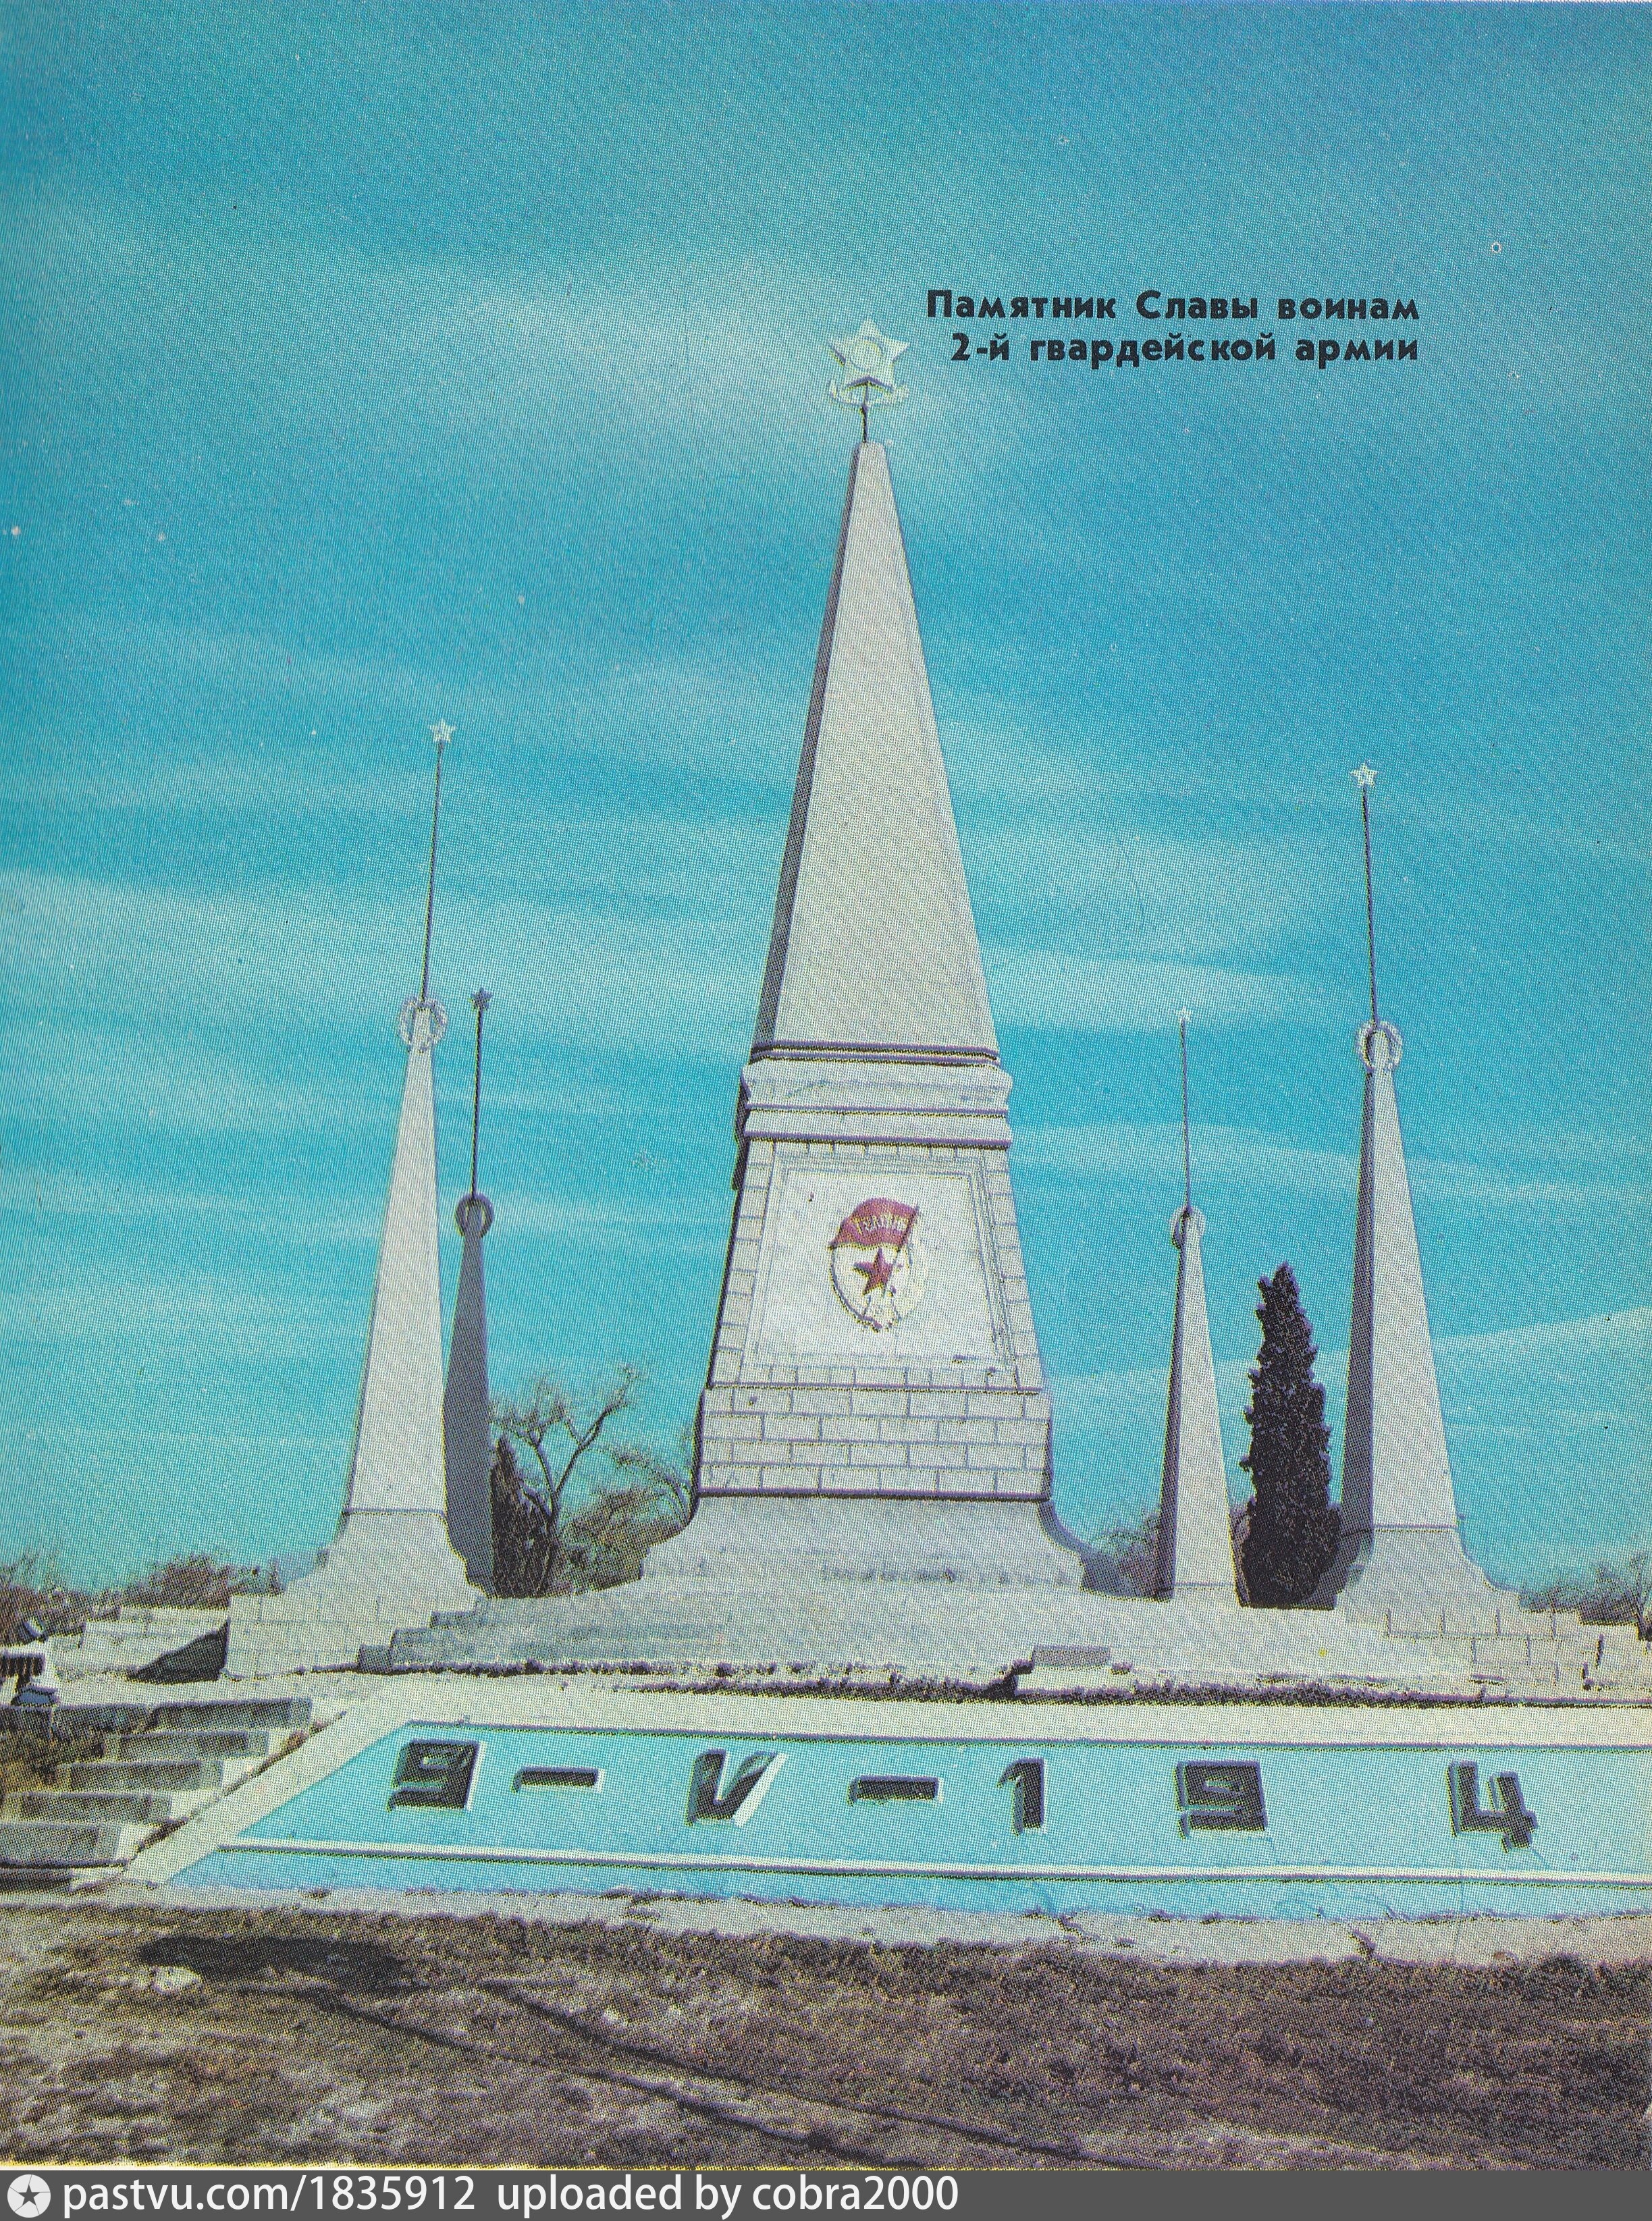 Памятник славы в севастополе фото